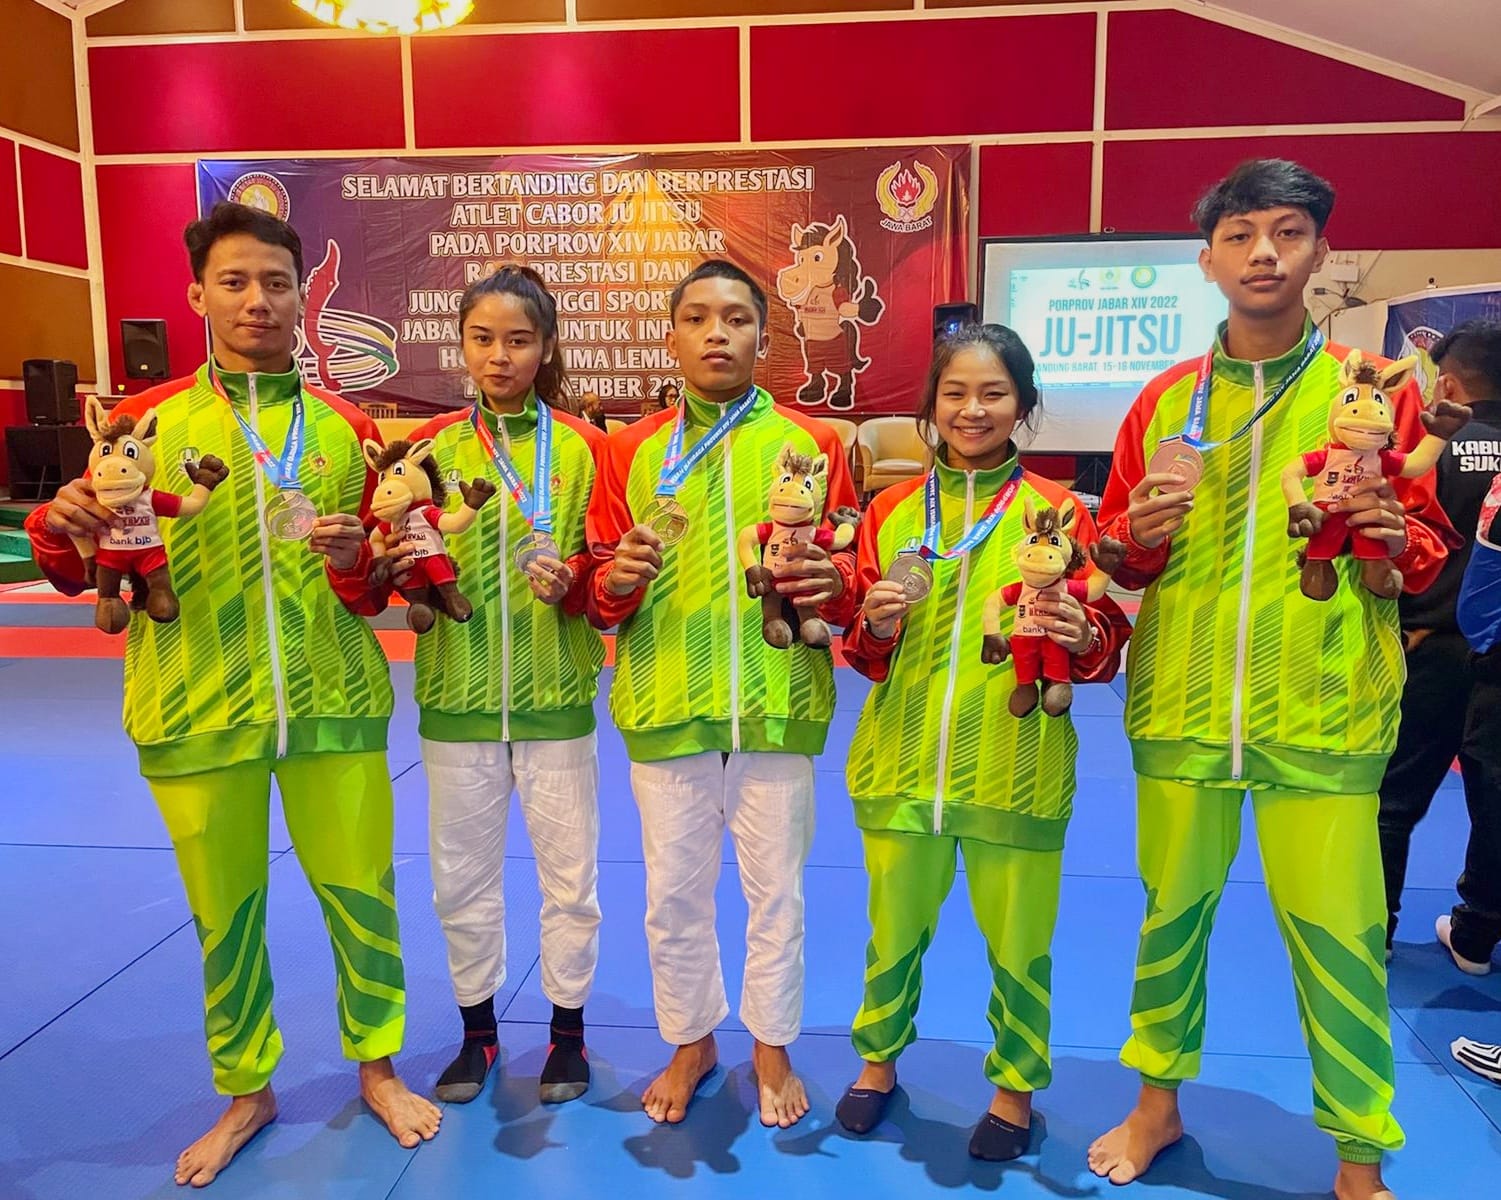 Para atlet jujitsu Kota Bekasi, yang berhasil meraih medali dalam event PORPROV XIV Jabar di Lembang, Kabupaten Bandung Barat.